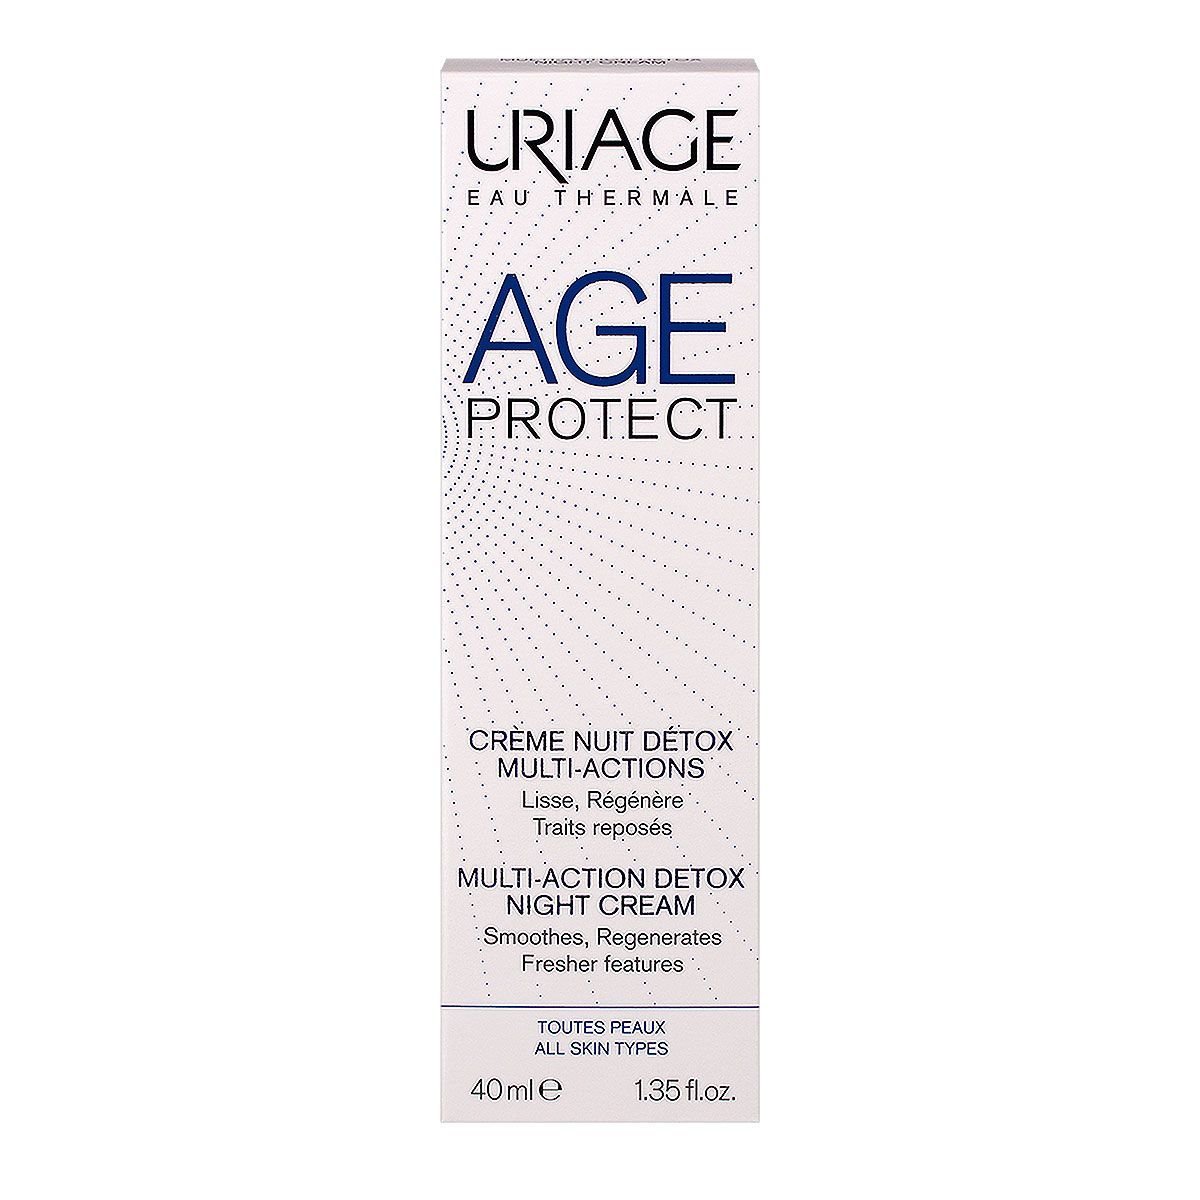 Многофункциональный ночной детокс-крем Uriage Age Protect Multi-Action Detox Night Cream Очищение и Коррекция, 40 мл - фото 2